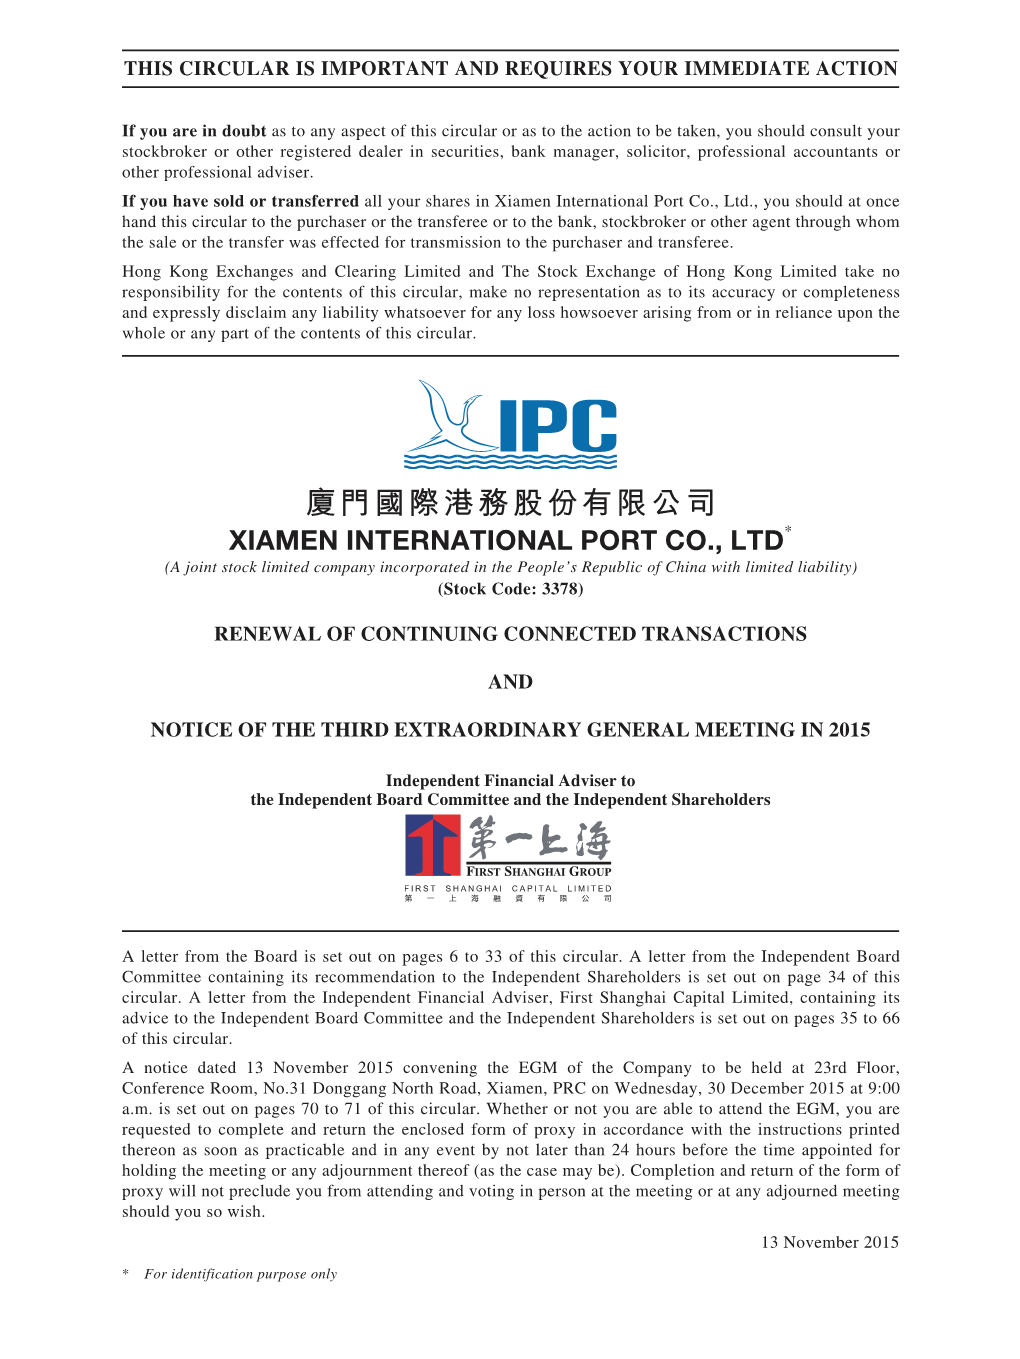 廈門國際港務股份有限公司 Xiamen International Port Co